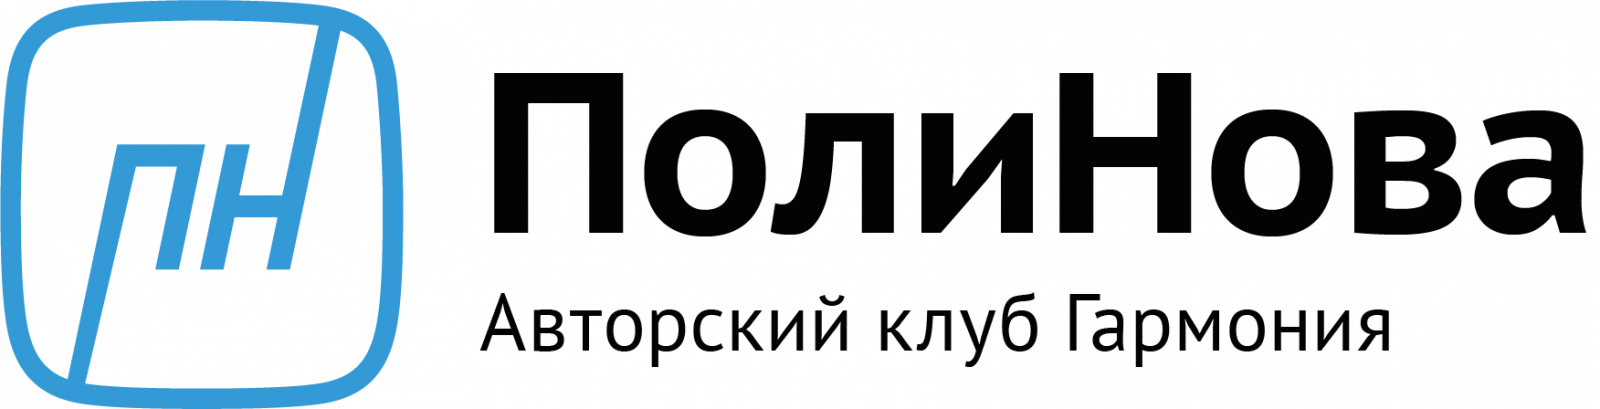 Логотип ЦМП Основная версия